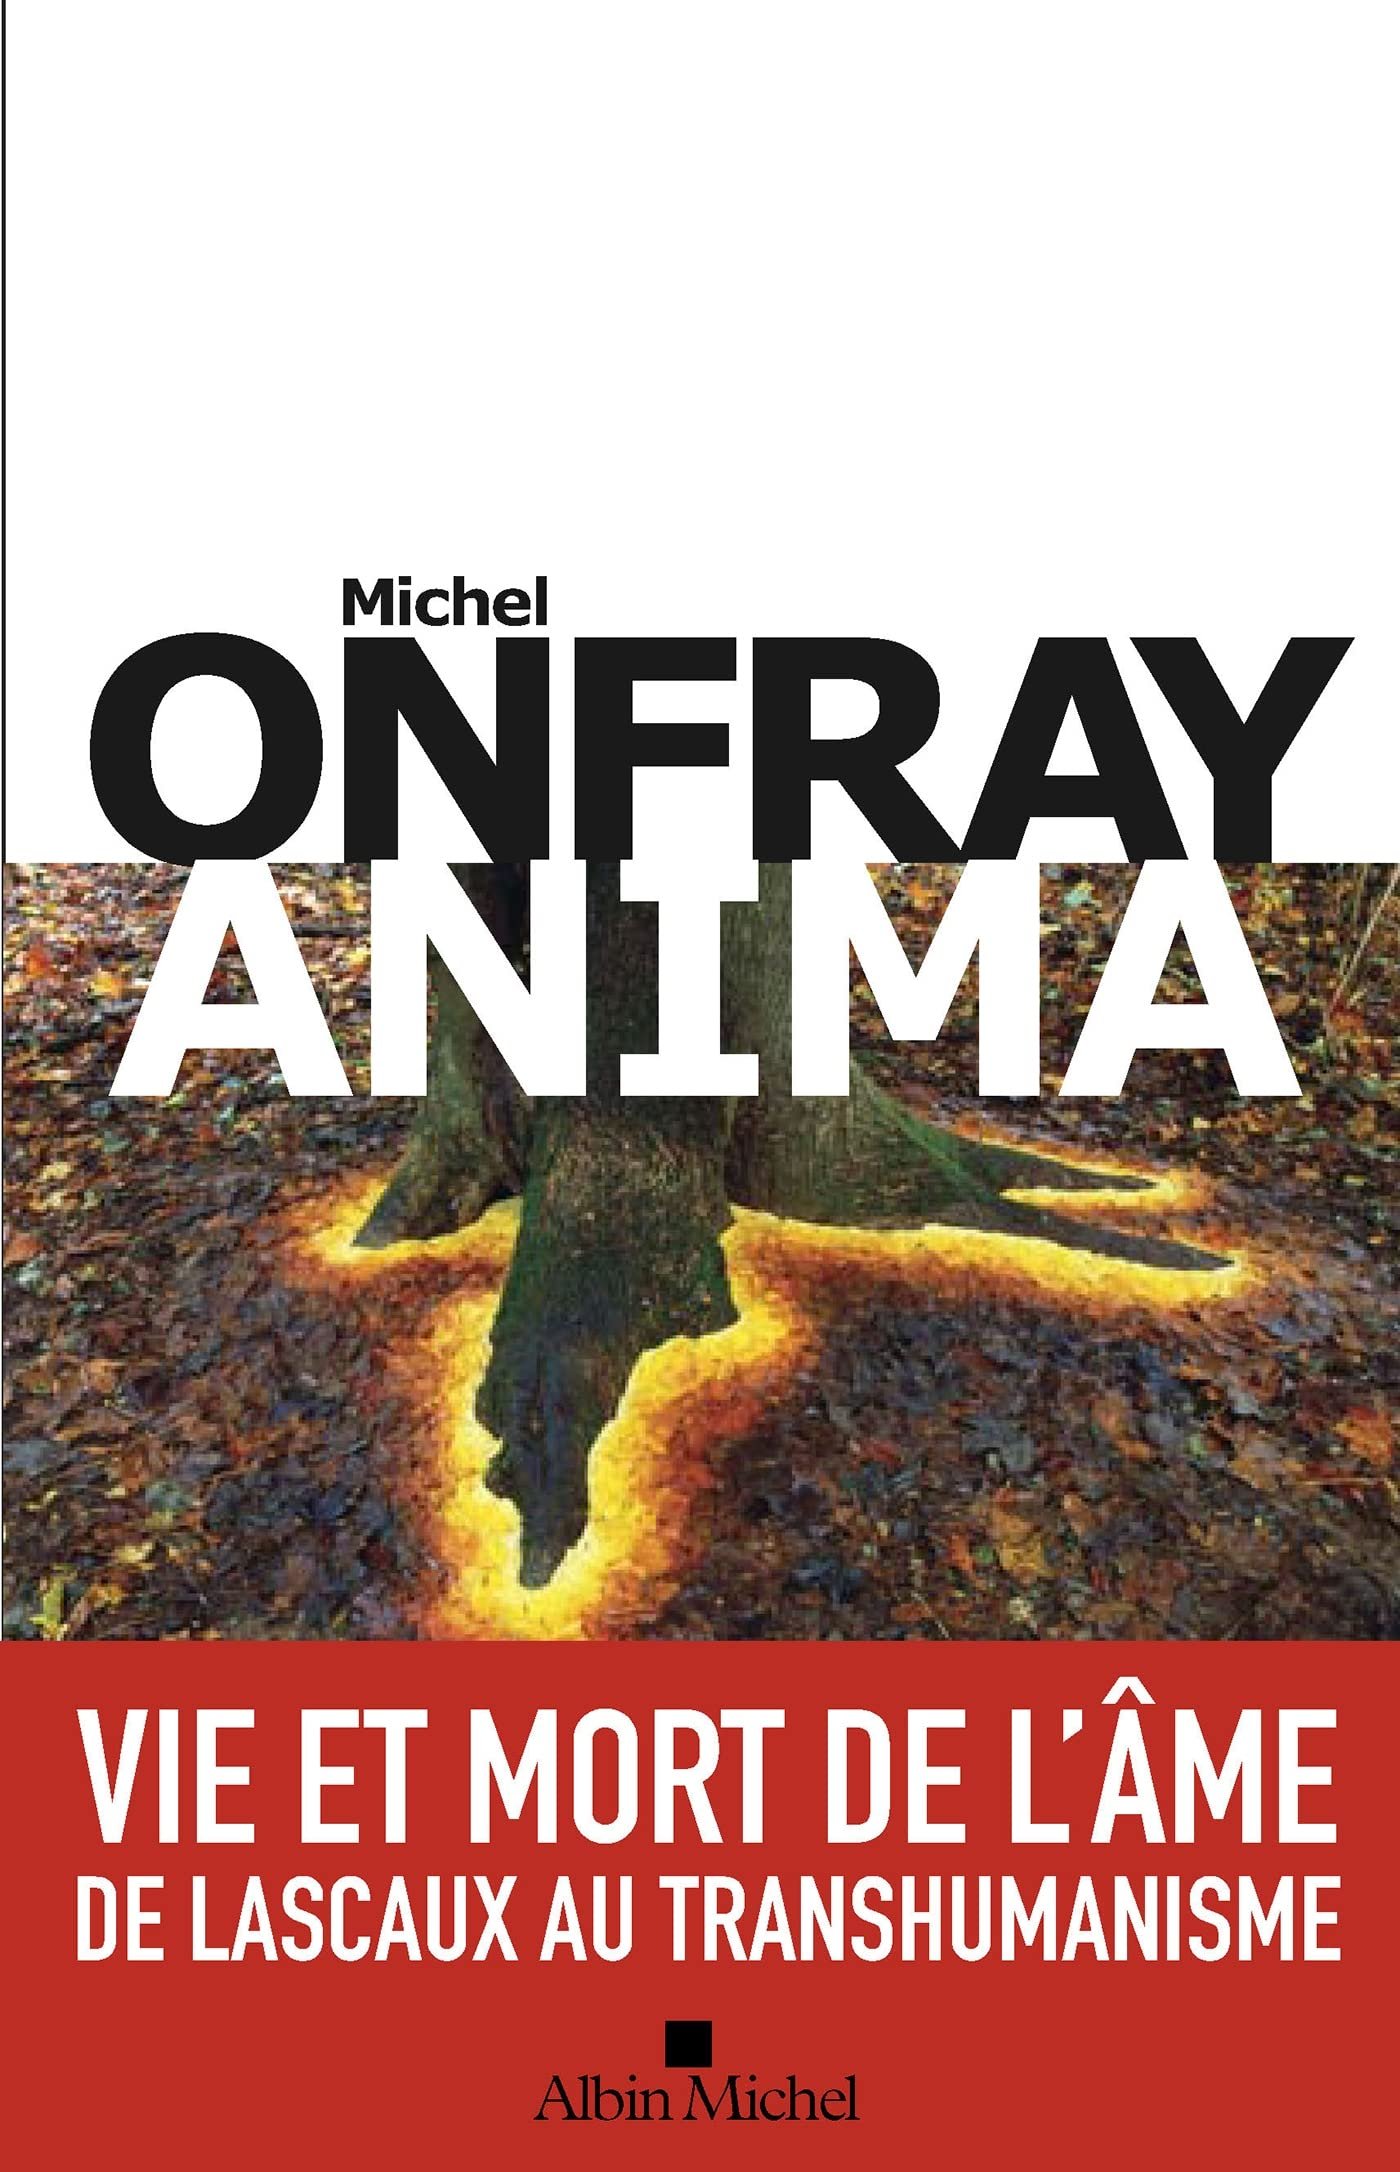 Michel Onfray – Anima: Vie et mort de l’âme de Lascaux au transhumanisme